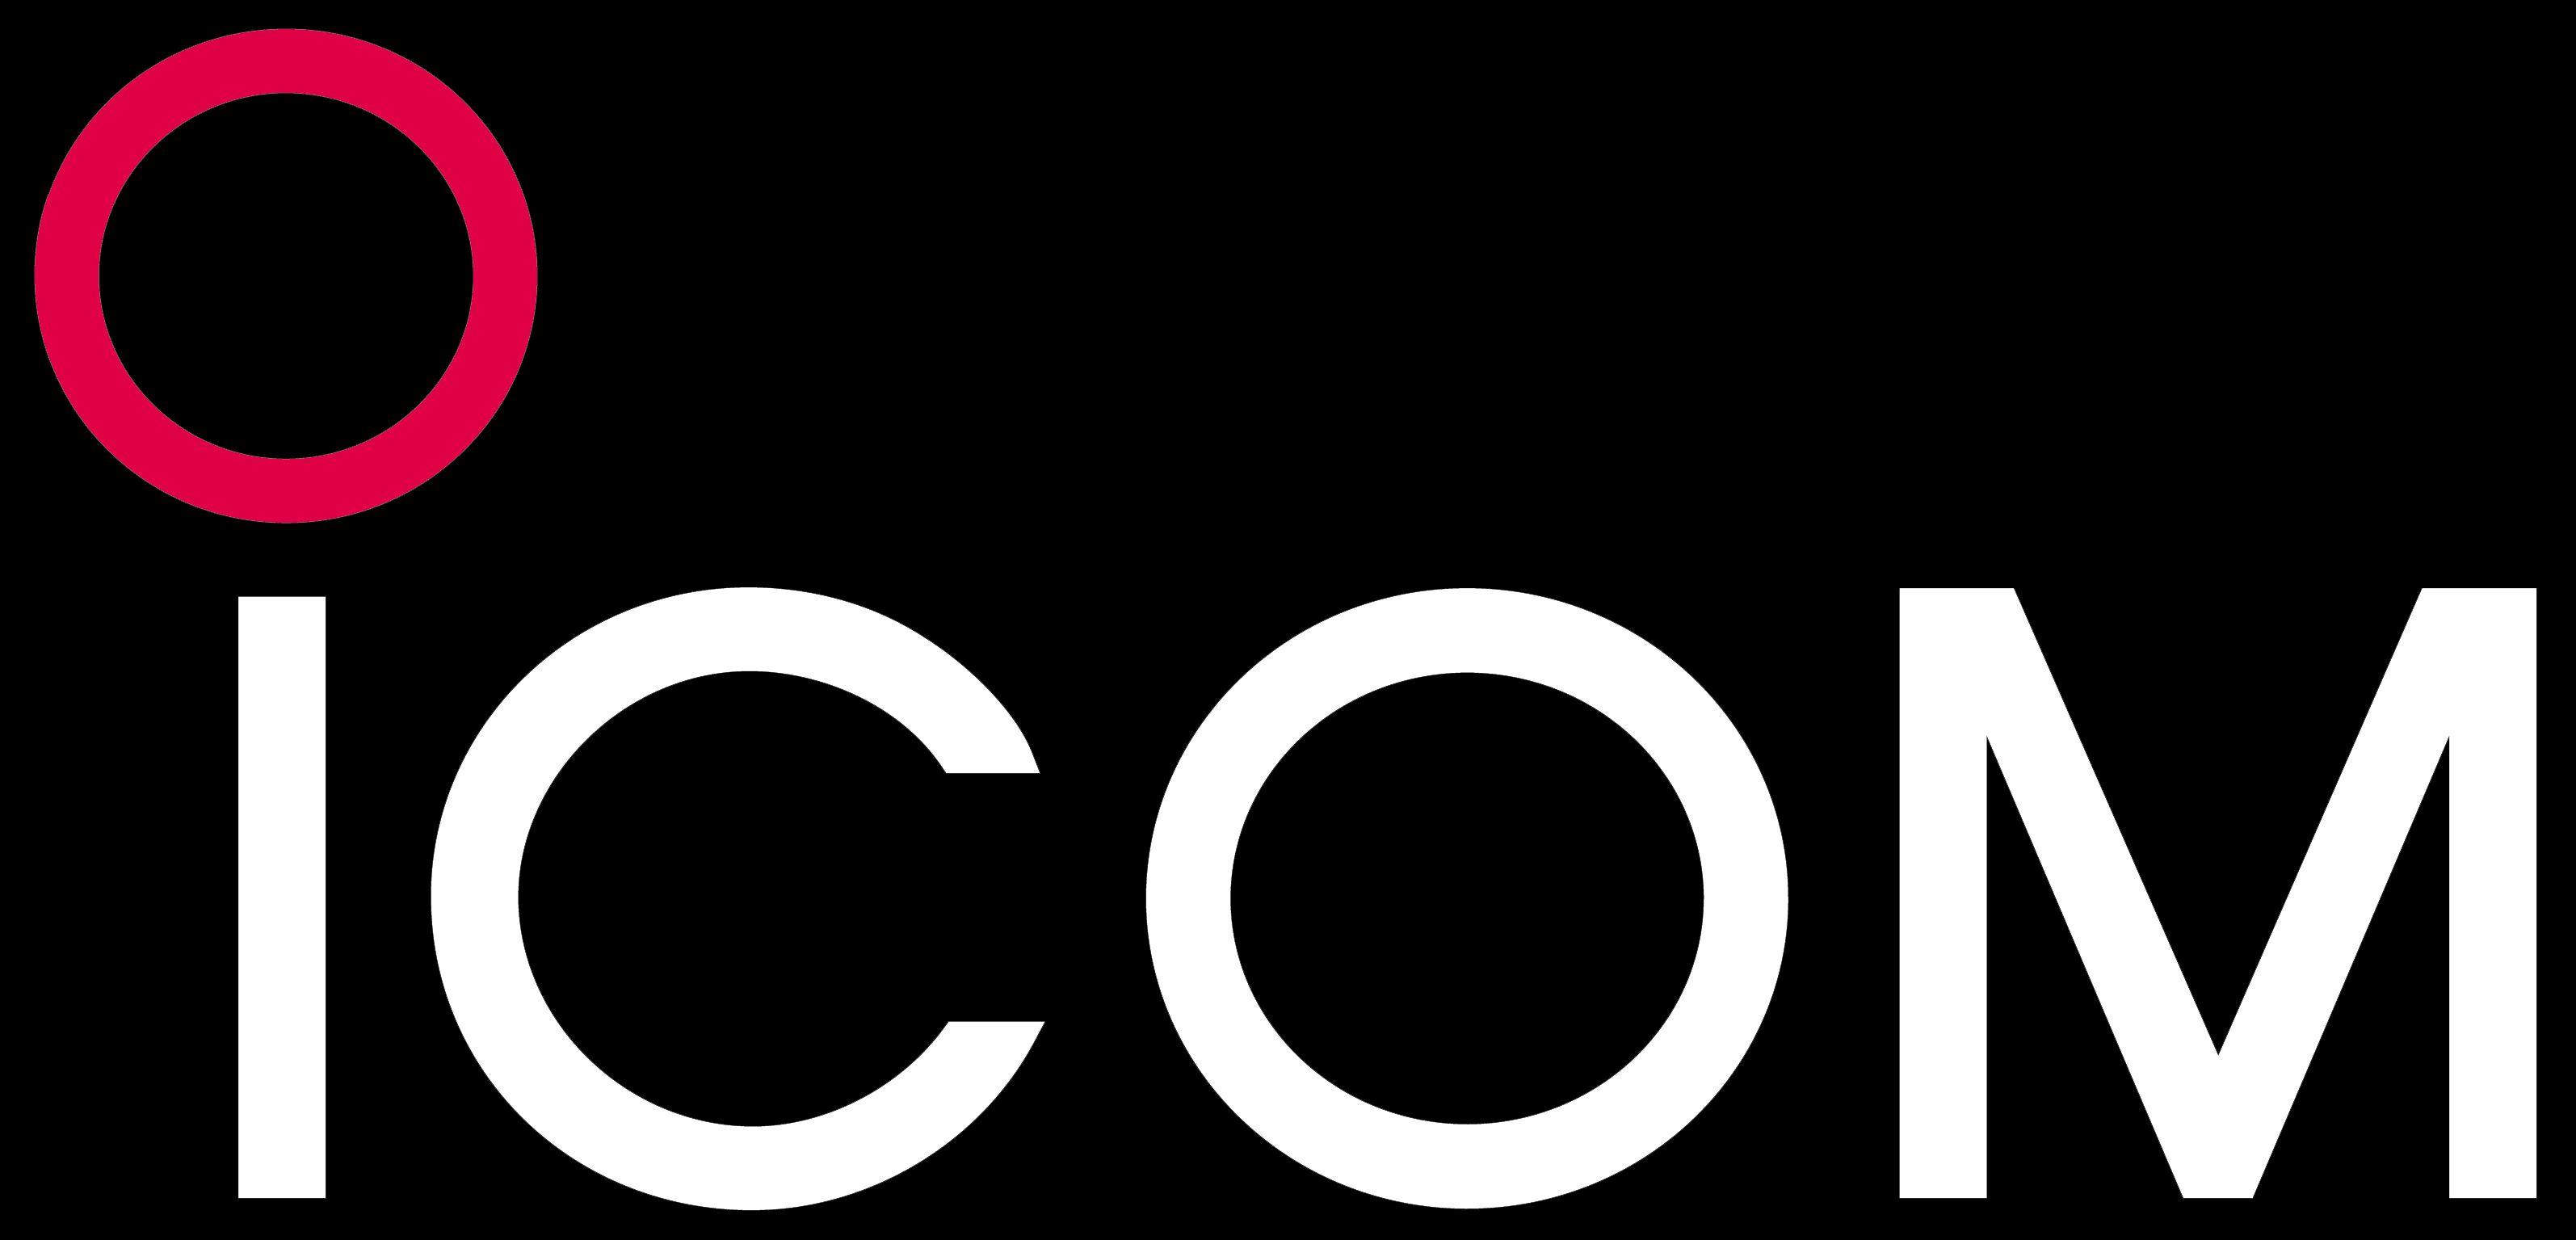 Icom Logo - Icom Image Bank - Icom UK